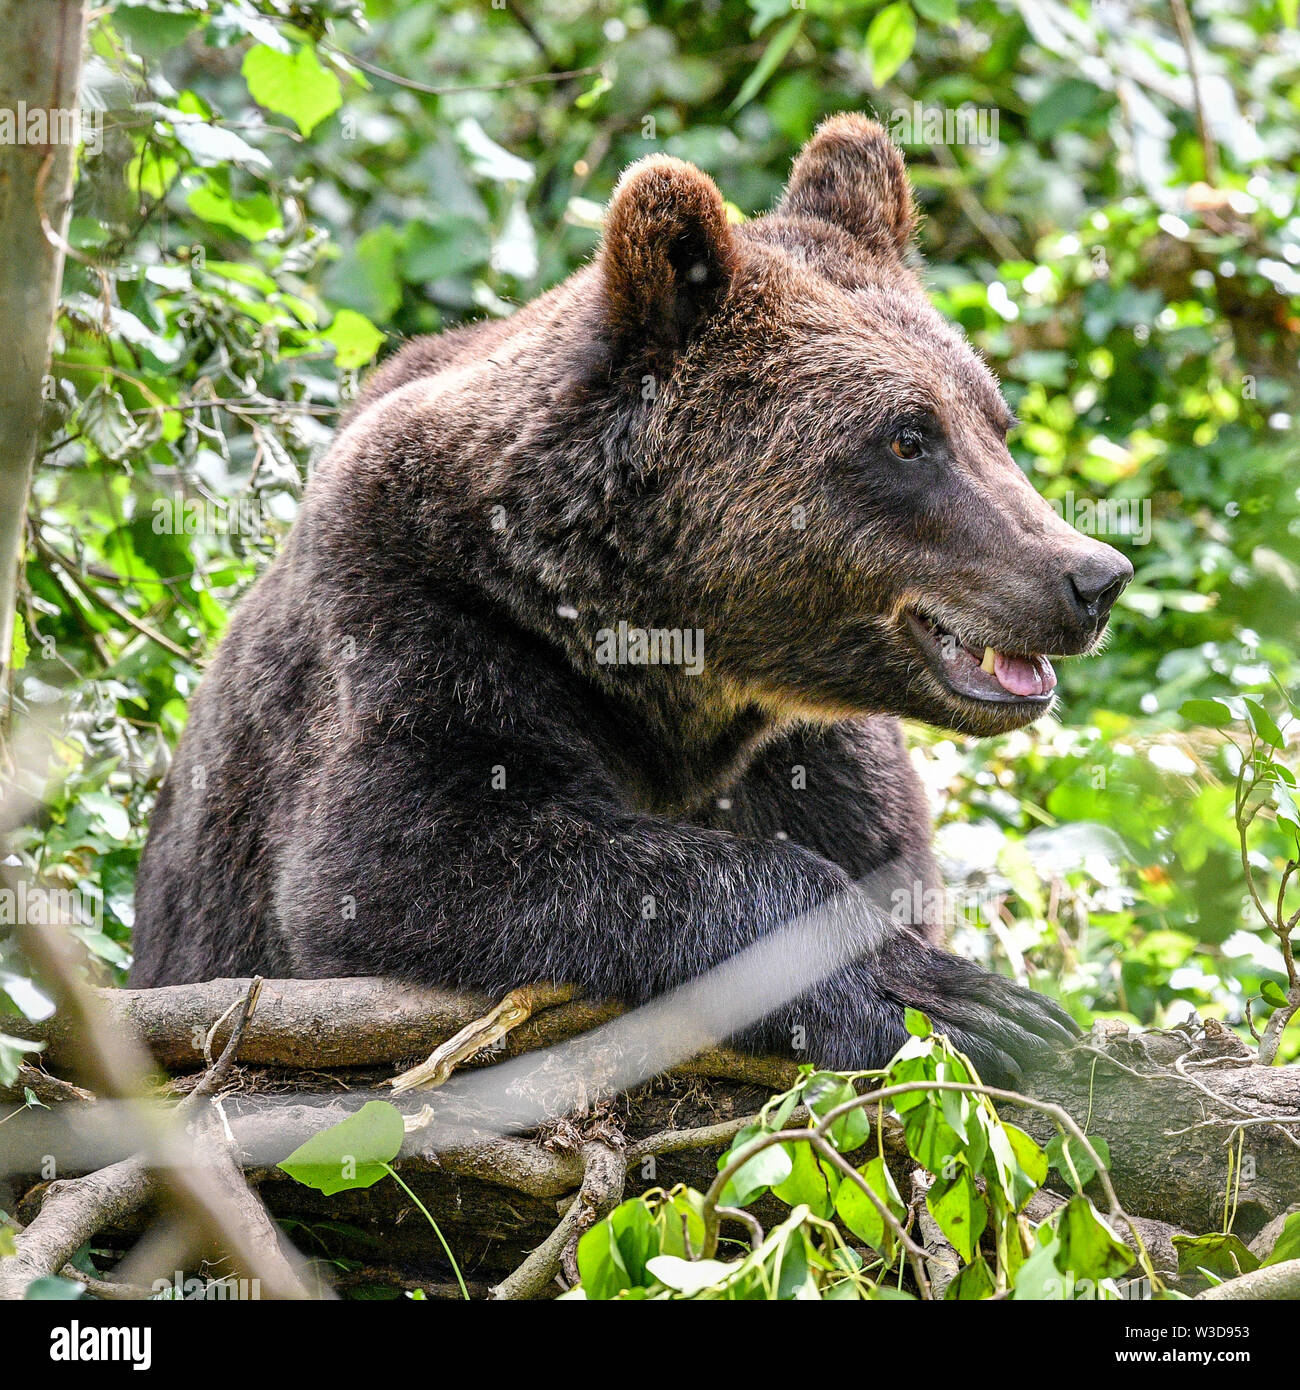 Ein europäischer Braunbär setzt sich in größten Braun in Großbritannien tragen Ausstellung bei wilden Ort Projekt, South Gloucestershire, wo die Bären, die sich in einem riesigen neuen Wald Lebensraum sind, neben der Wölfe, Luchse und Wolverine zu leben, so wie sie vor Tausenden von Jahren getan haben würde. Tragen Holz ist für die Öffentlichkeit am 25. Juli zu öffnen. Stockfoto